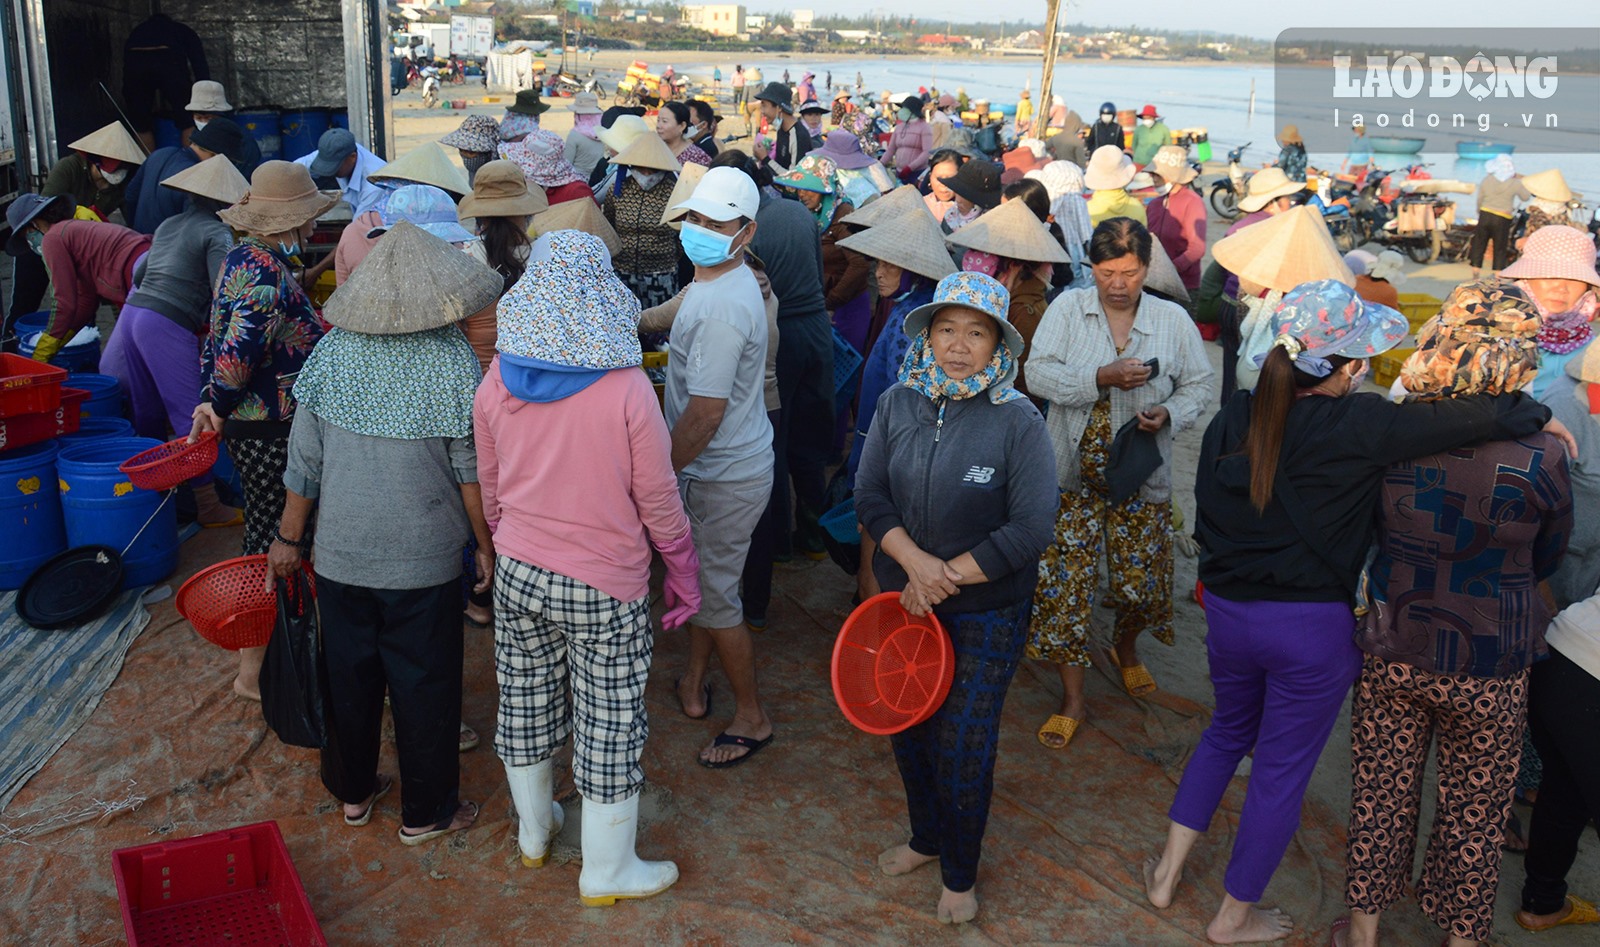 Chợ làng biển ở Quảng Ngãi, trên trời ánh bình minh, dưới tấp nập người mua bán, toàn thấy cá là cá - Ảnh 11.